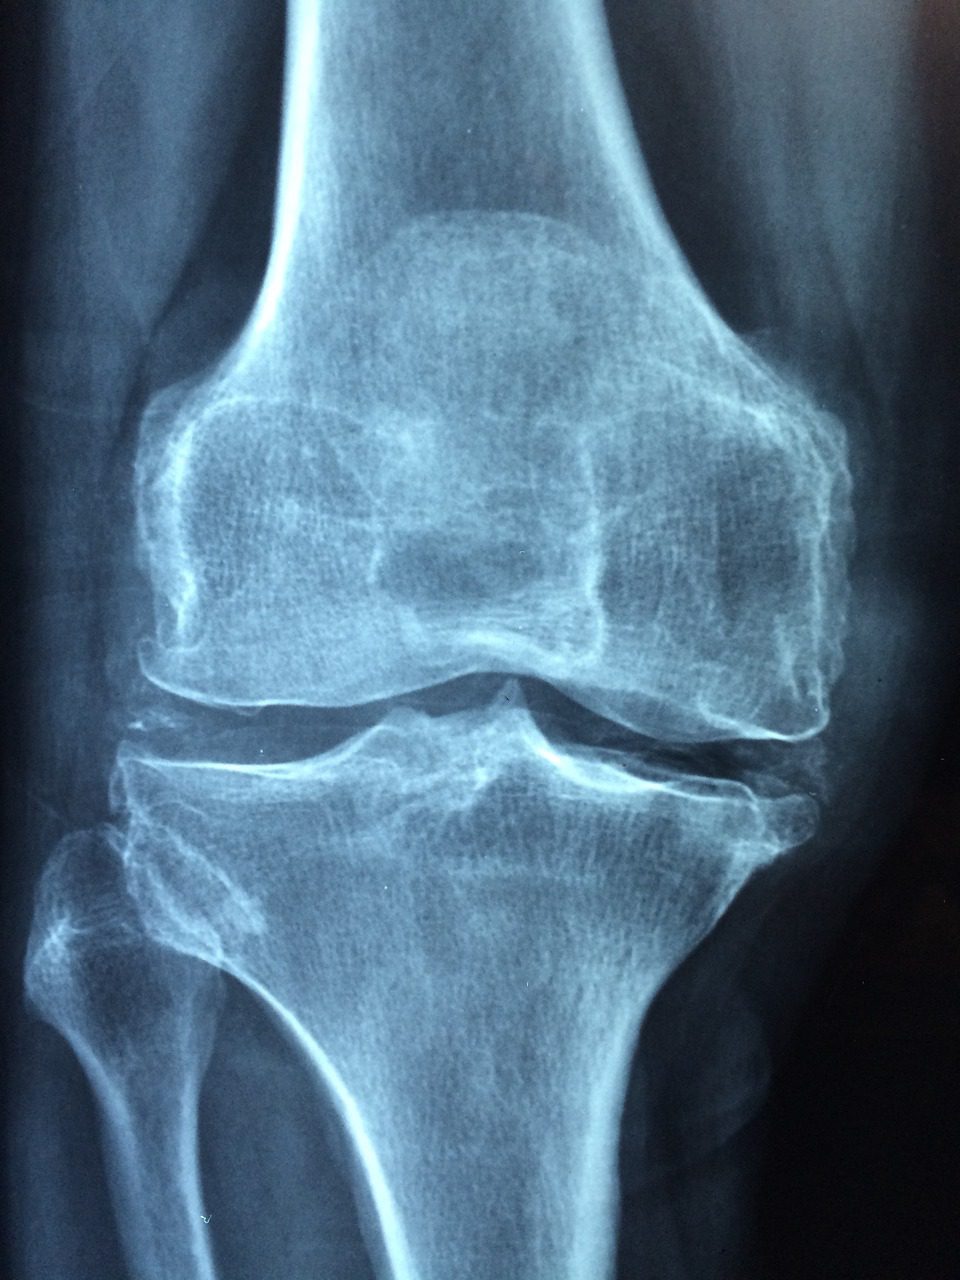 Knee Injury X-Ray